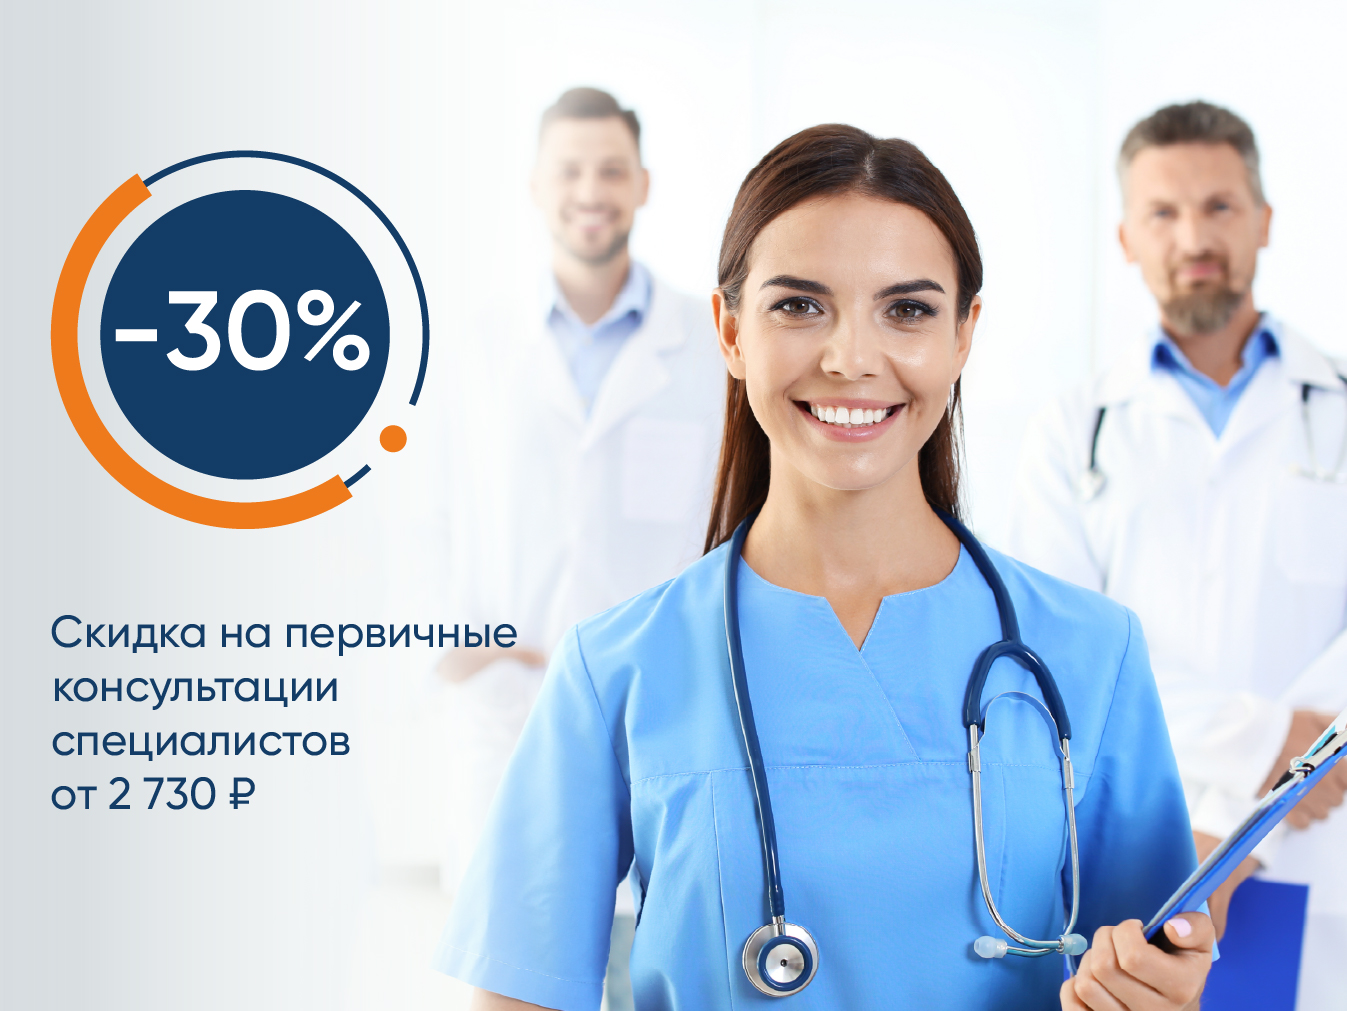 Скидка 30% на первичные консультации специалистов от 2730 руб.